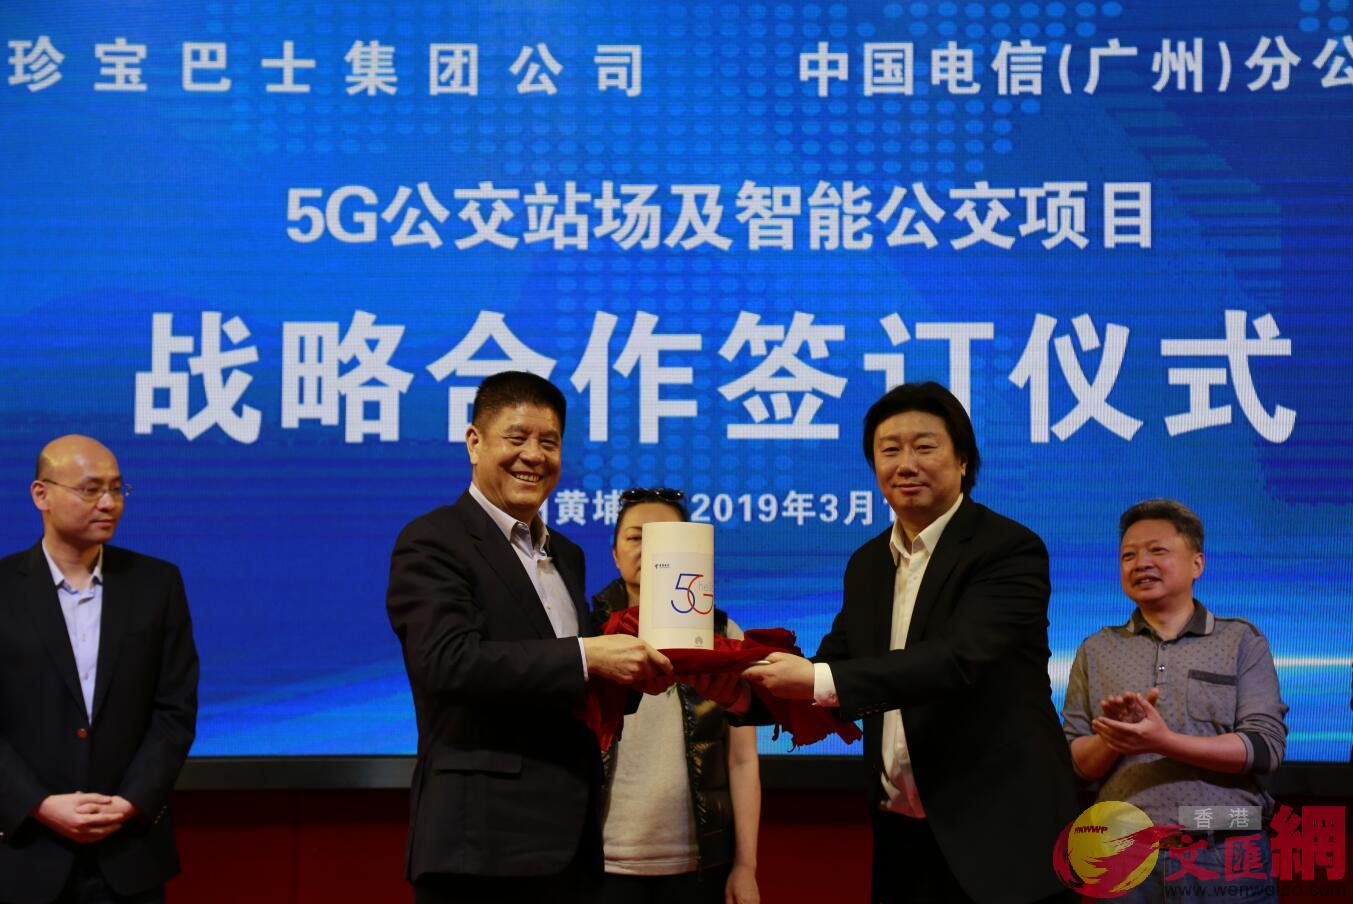 珍寶巴士集團與中國電信廣州分公司在廣州黃埔區就5G公交站場項目和智能公交項目簽署戰略合作協議]敖敏輝 攝^